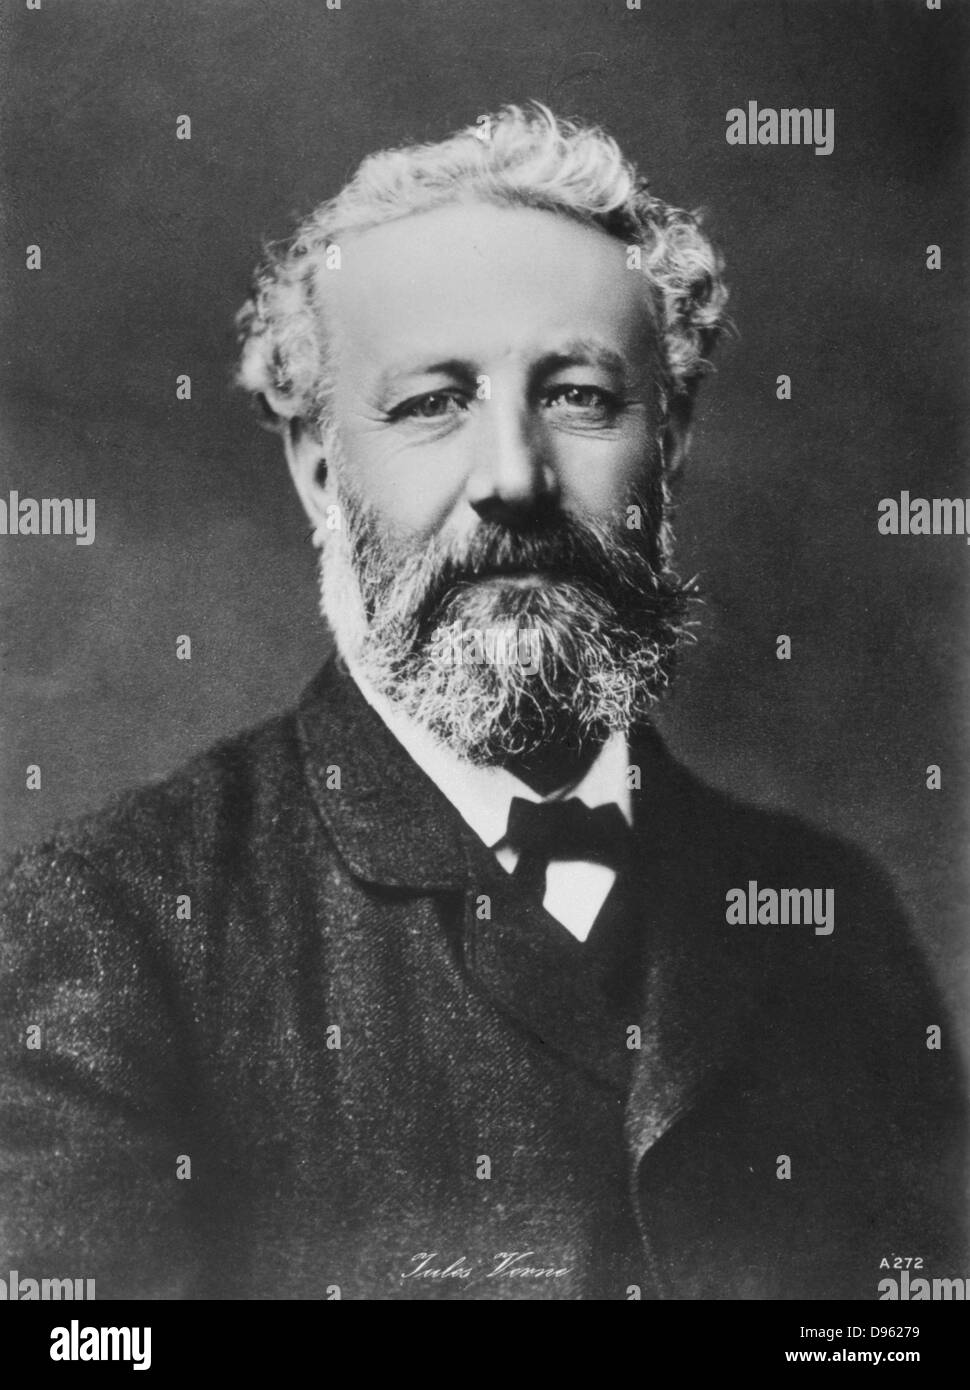 Jules Verne (1828-1905). Il romanziere francese. Fotografia. Foto Stock